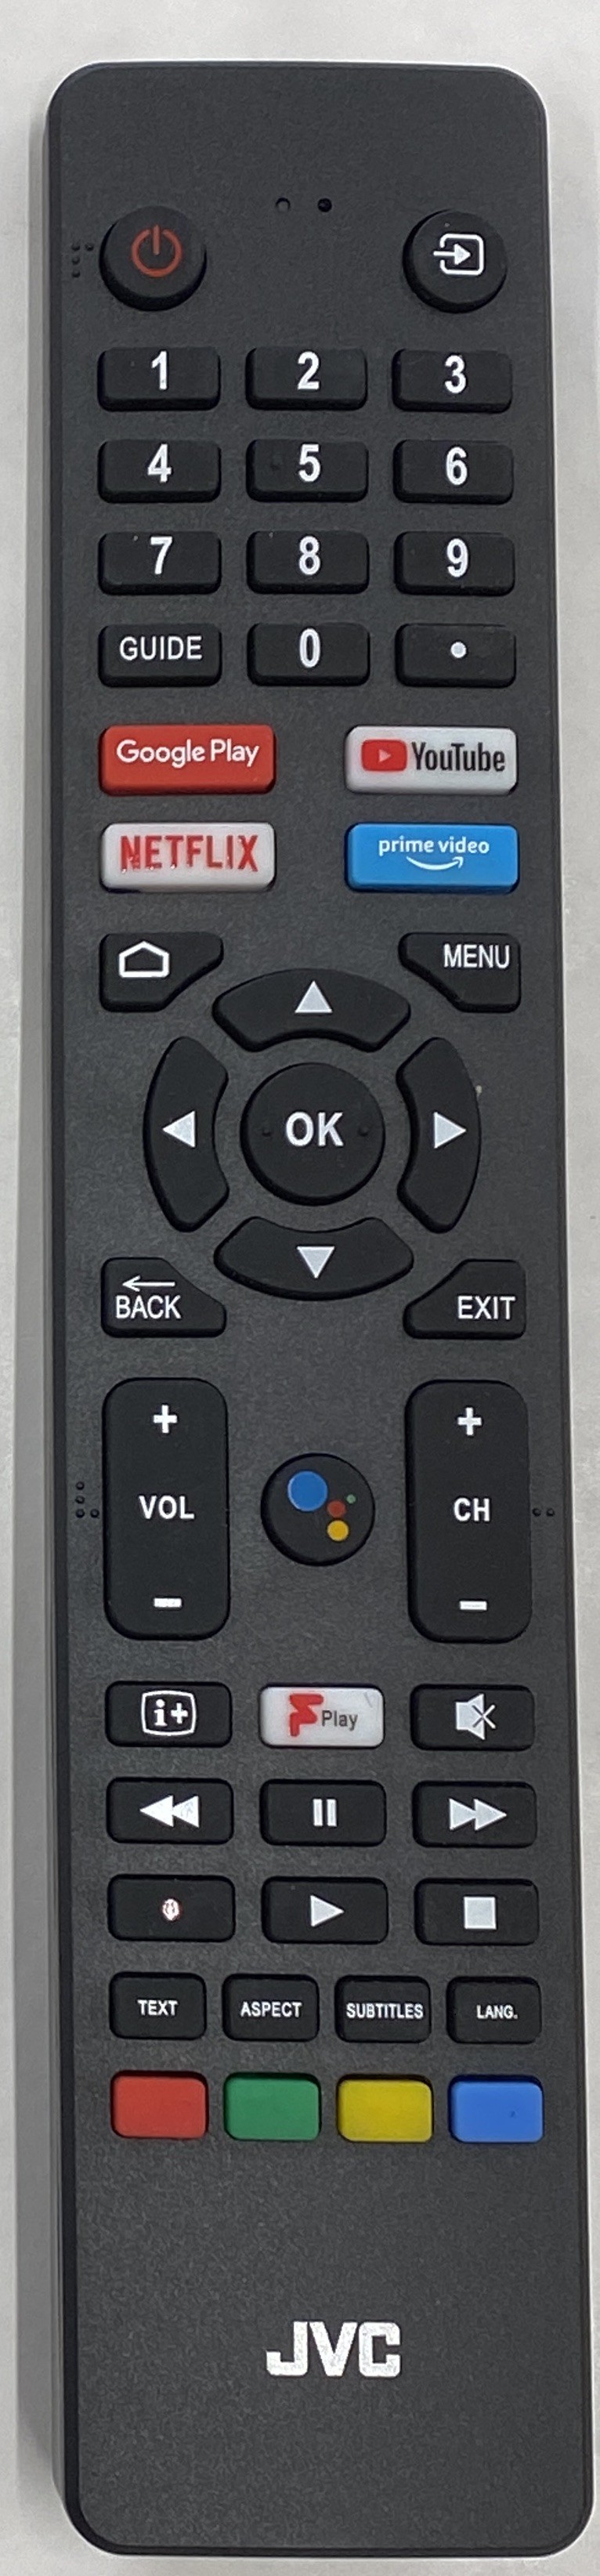 JVC RM-C3250 Remote Control Original 